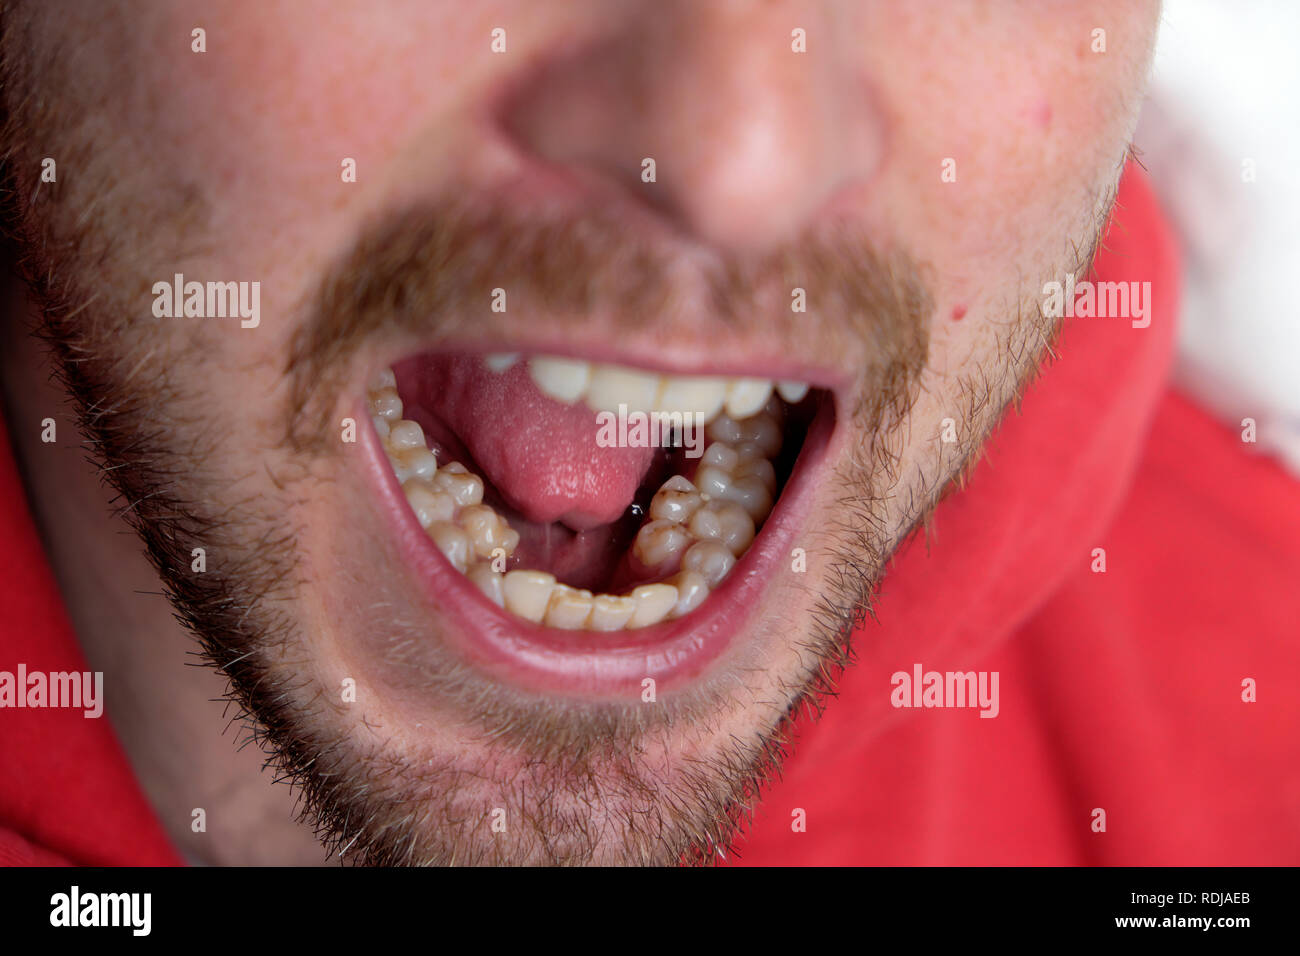 Un jeune homme avec la bouche ouverte montrant son jeu supplémentaire de prémolaires molaires dents prémolaires surnuméraires au Pays de Galles UK KATHY DEWITT Banque D'Images